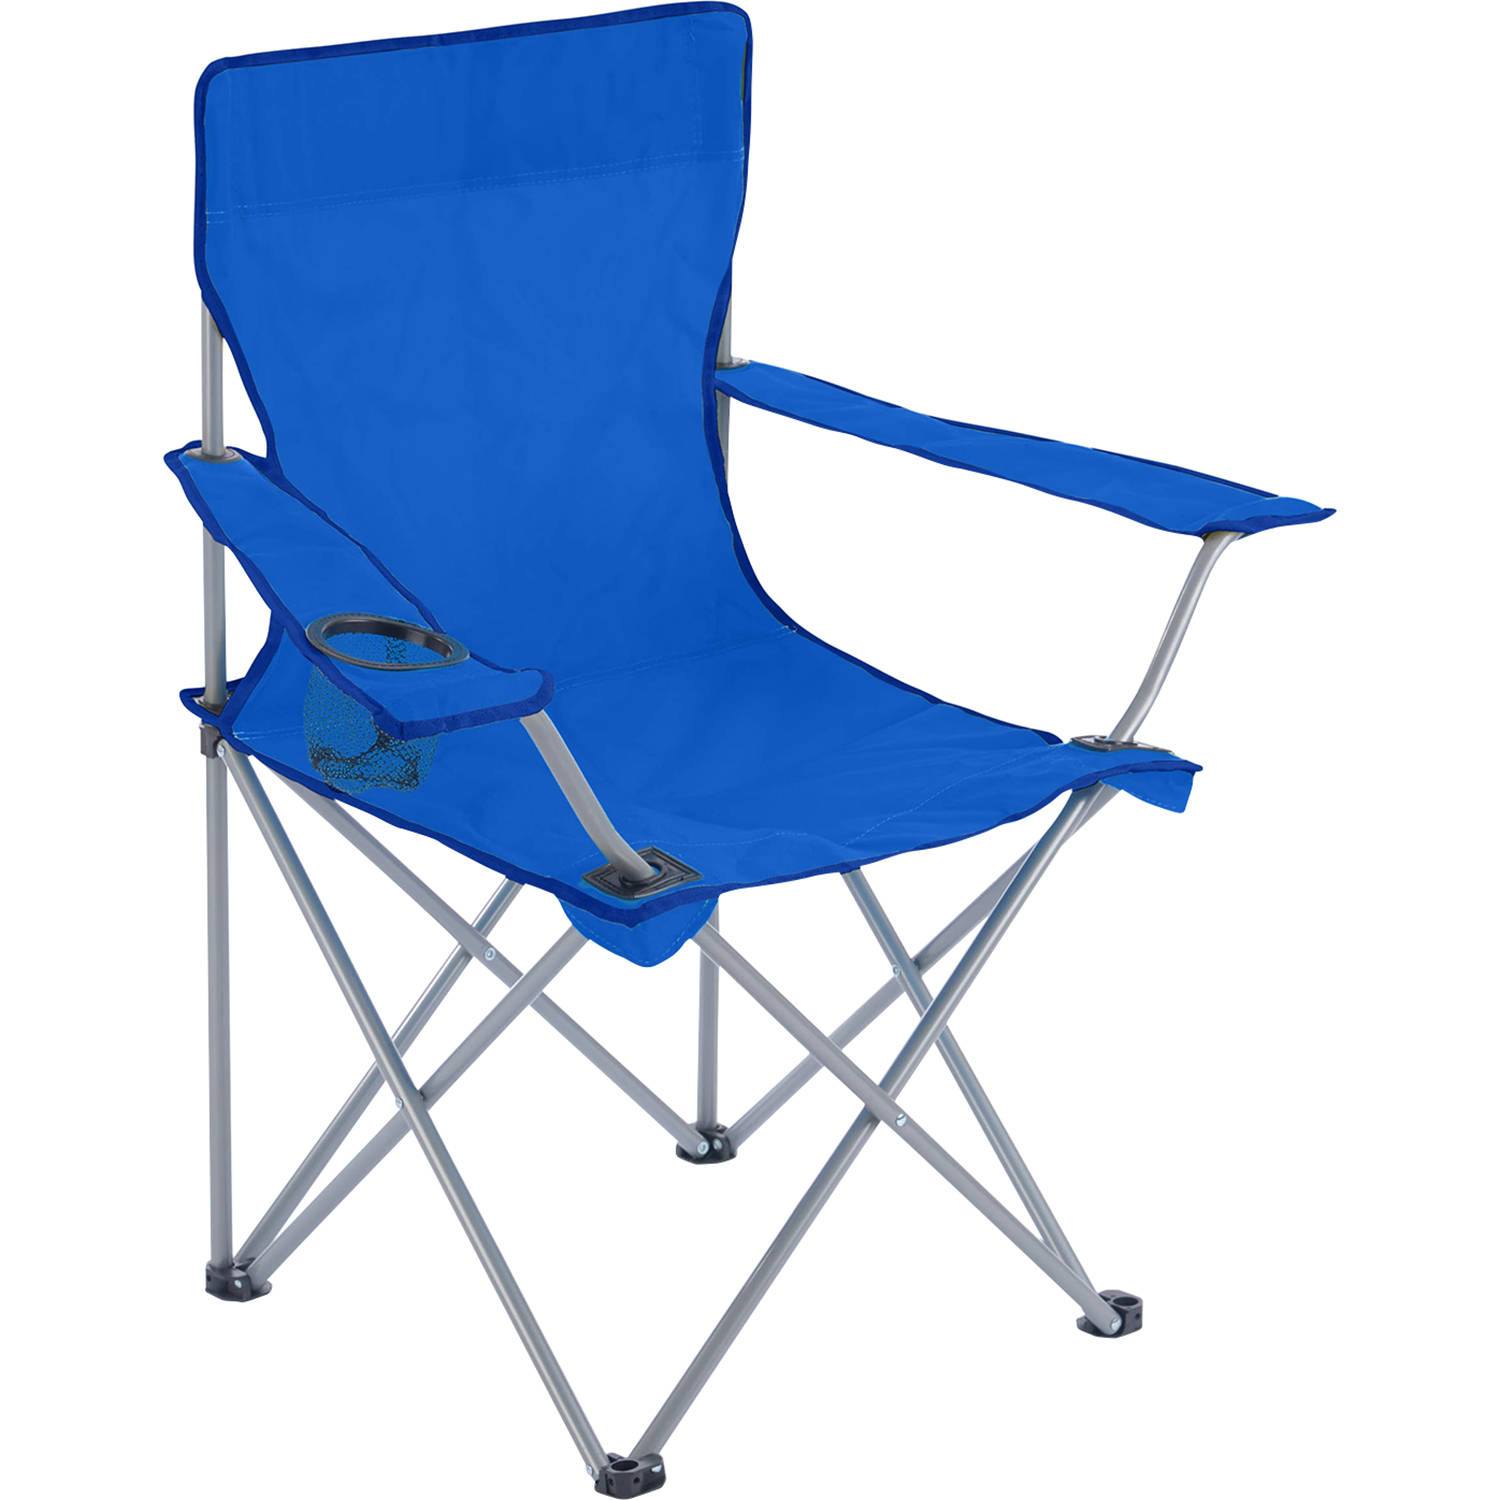 Yello campingstoel true blue